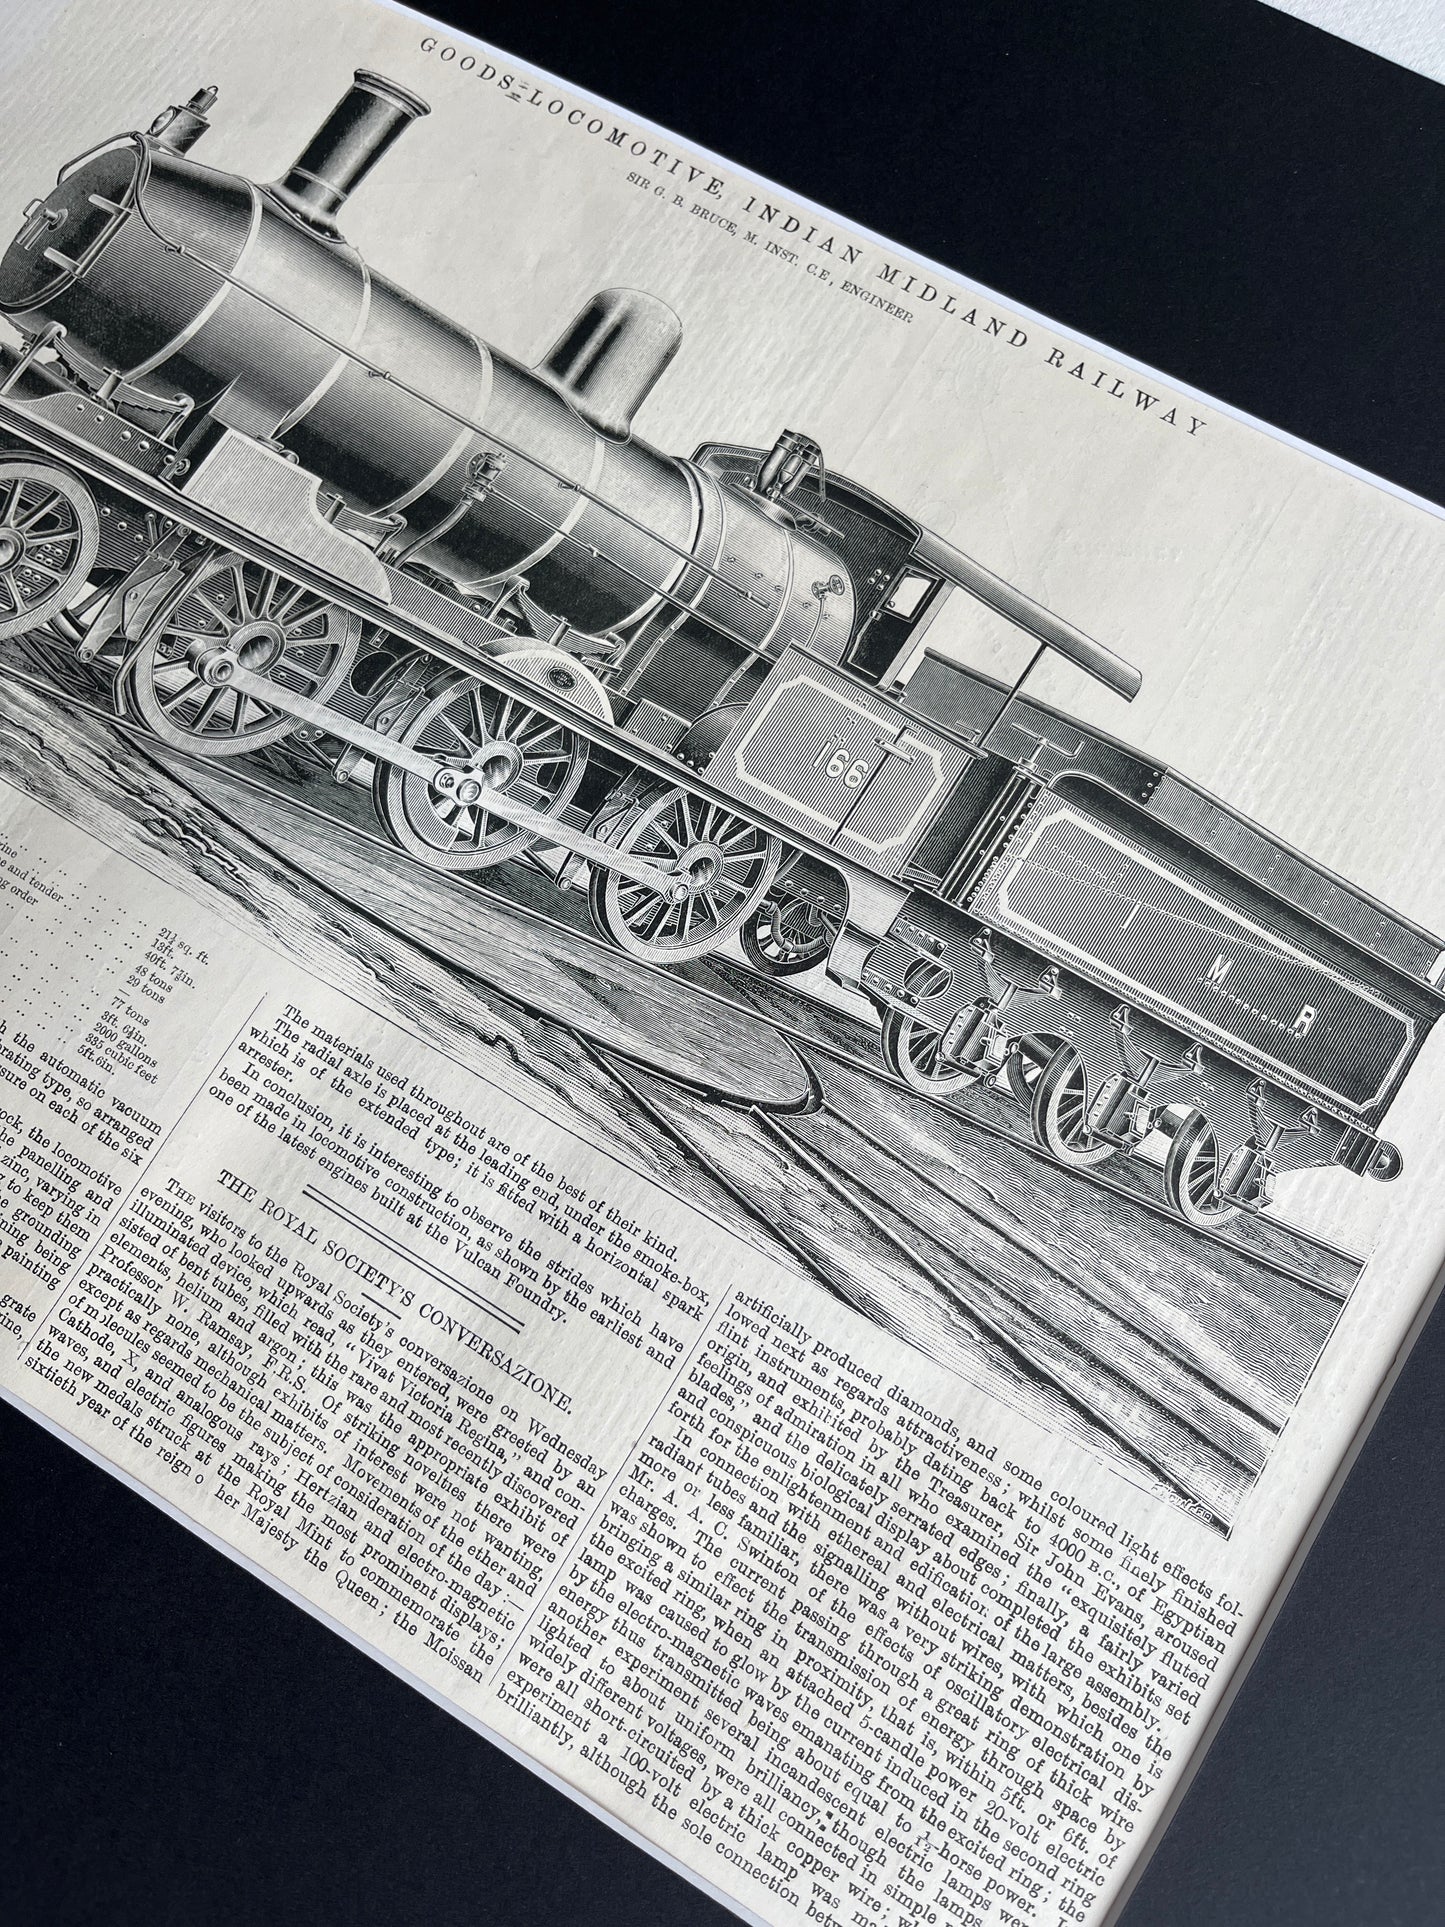 Goods locomotive prent uit The Engineer uit 1897